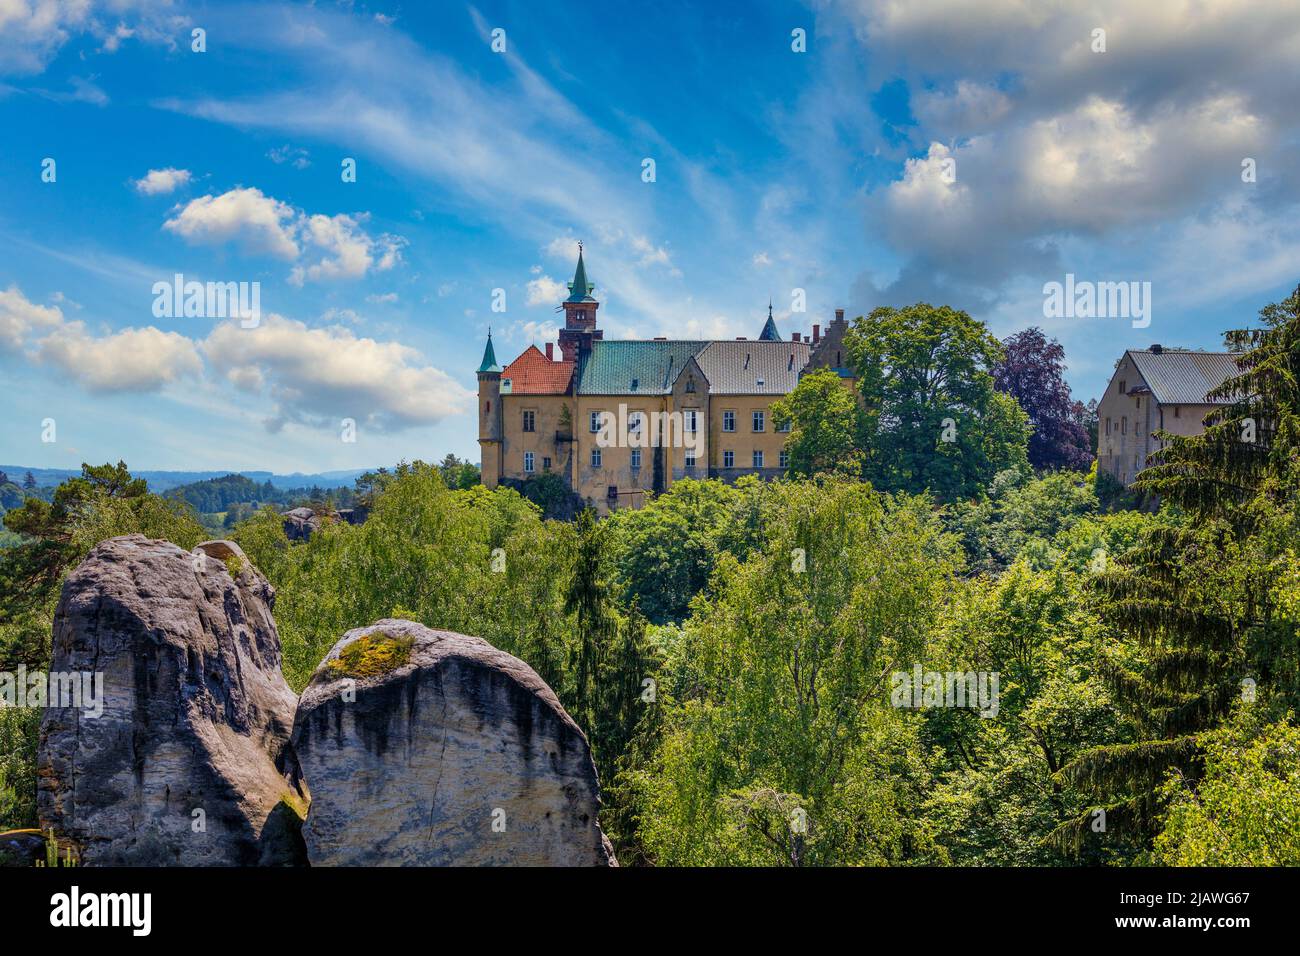 Burg Hruba skala auf der Spitze von Sandsteinfelsen gebaut. Böhmisches Paradies, Tschechisch: Cesky raj, Tschechische Republik. Burg Hruba Skala, Böhmisches Paradies reg Stockfoto